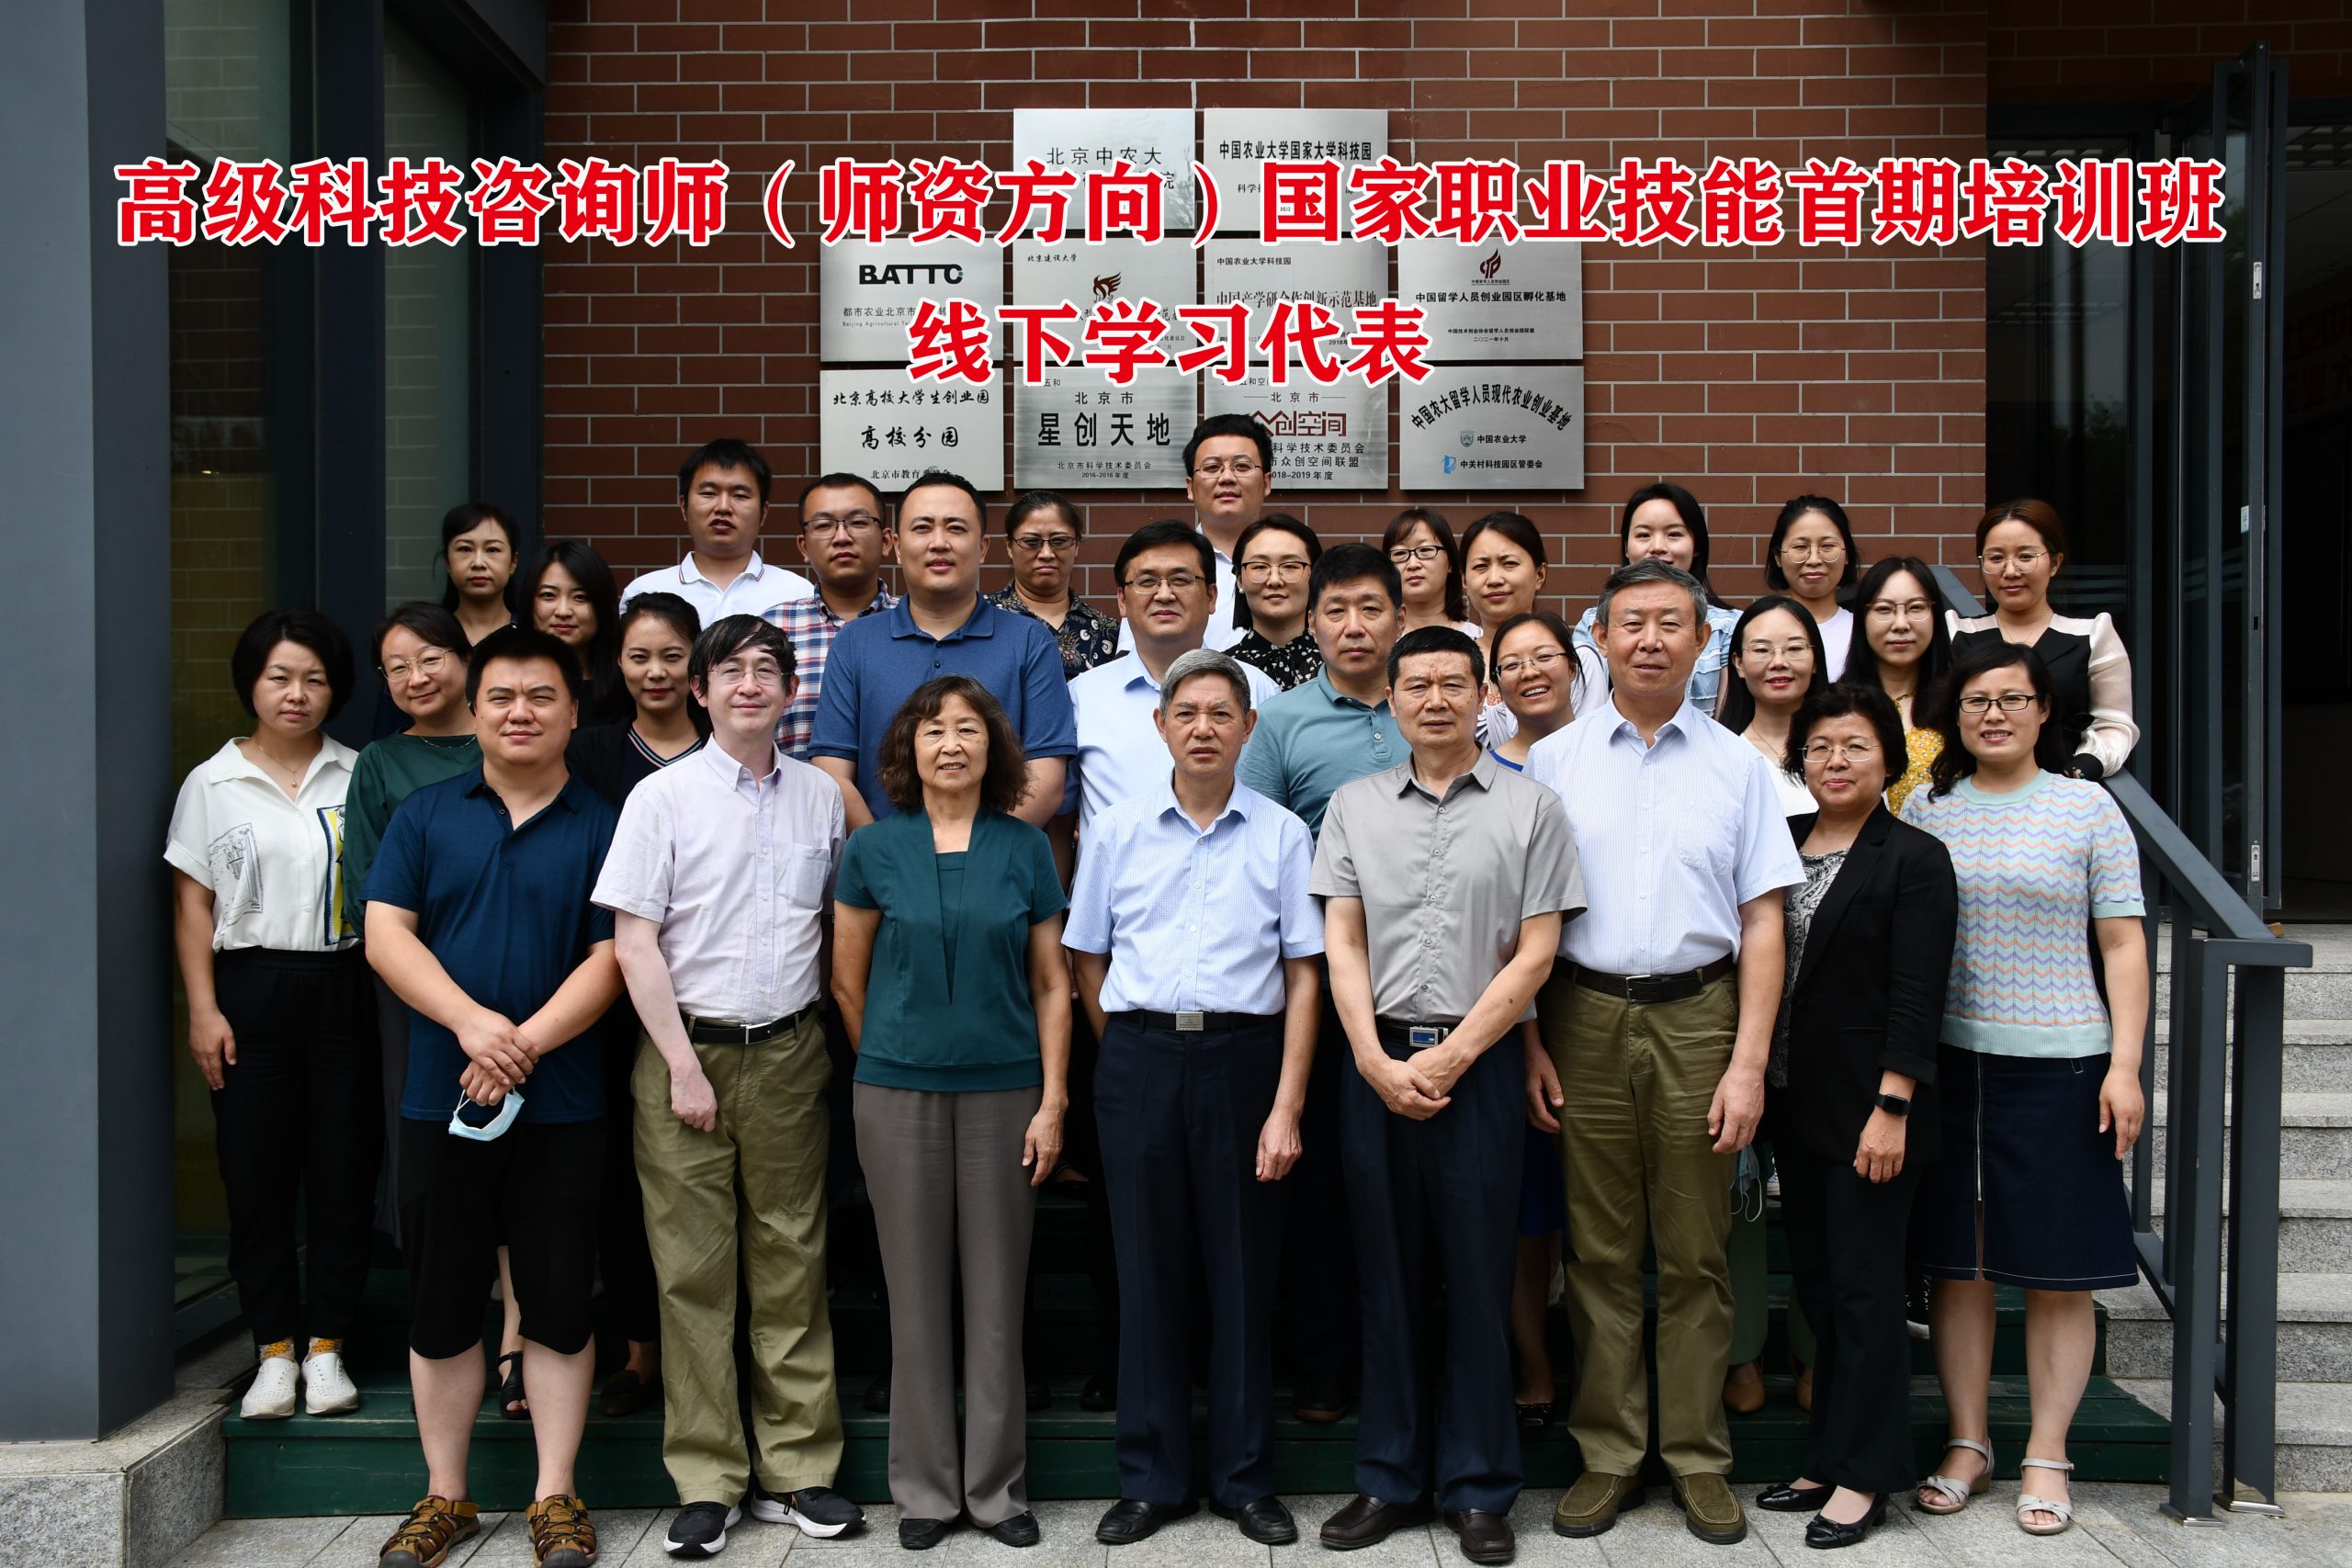 全国首期《高级科技咨询师》国家职业技能培训班 在京举办